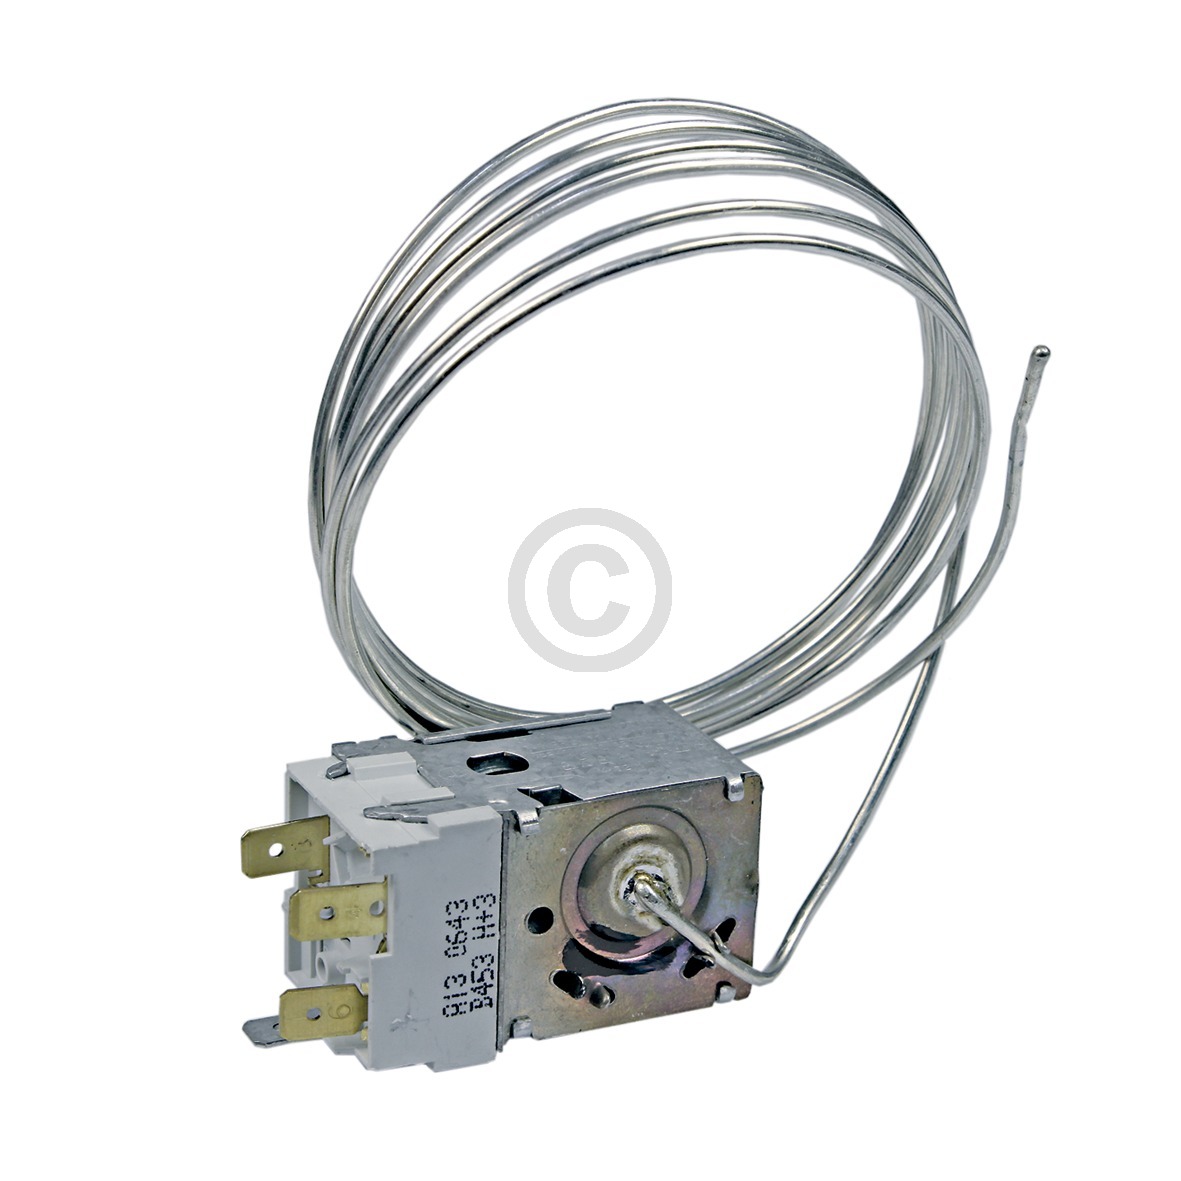 Thermostat K59-L2139/500 Ranco 1600mm Kapillarrohr 3x6,3mm AMP Whirlpool